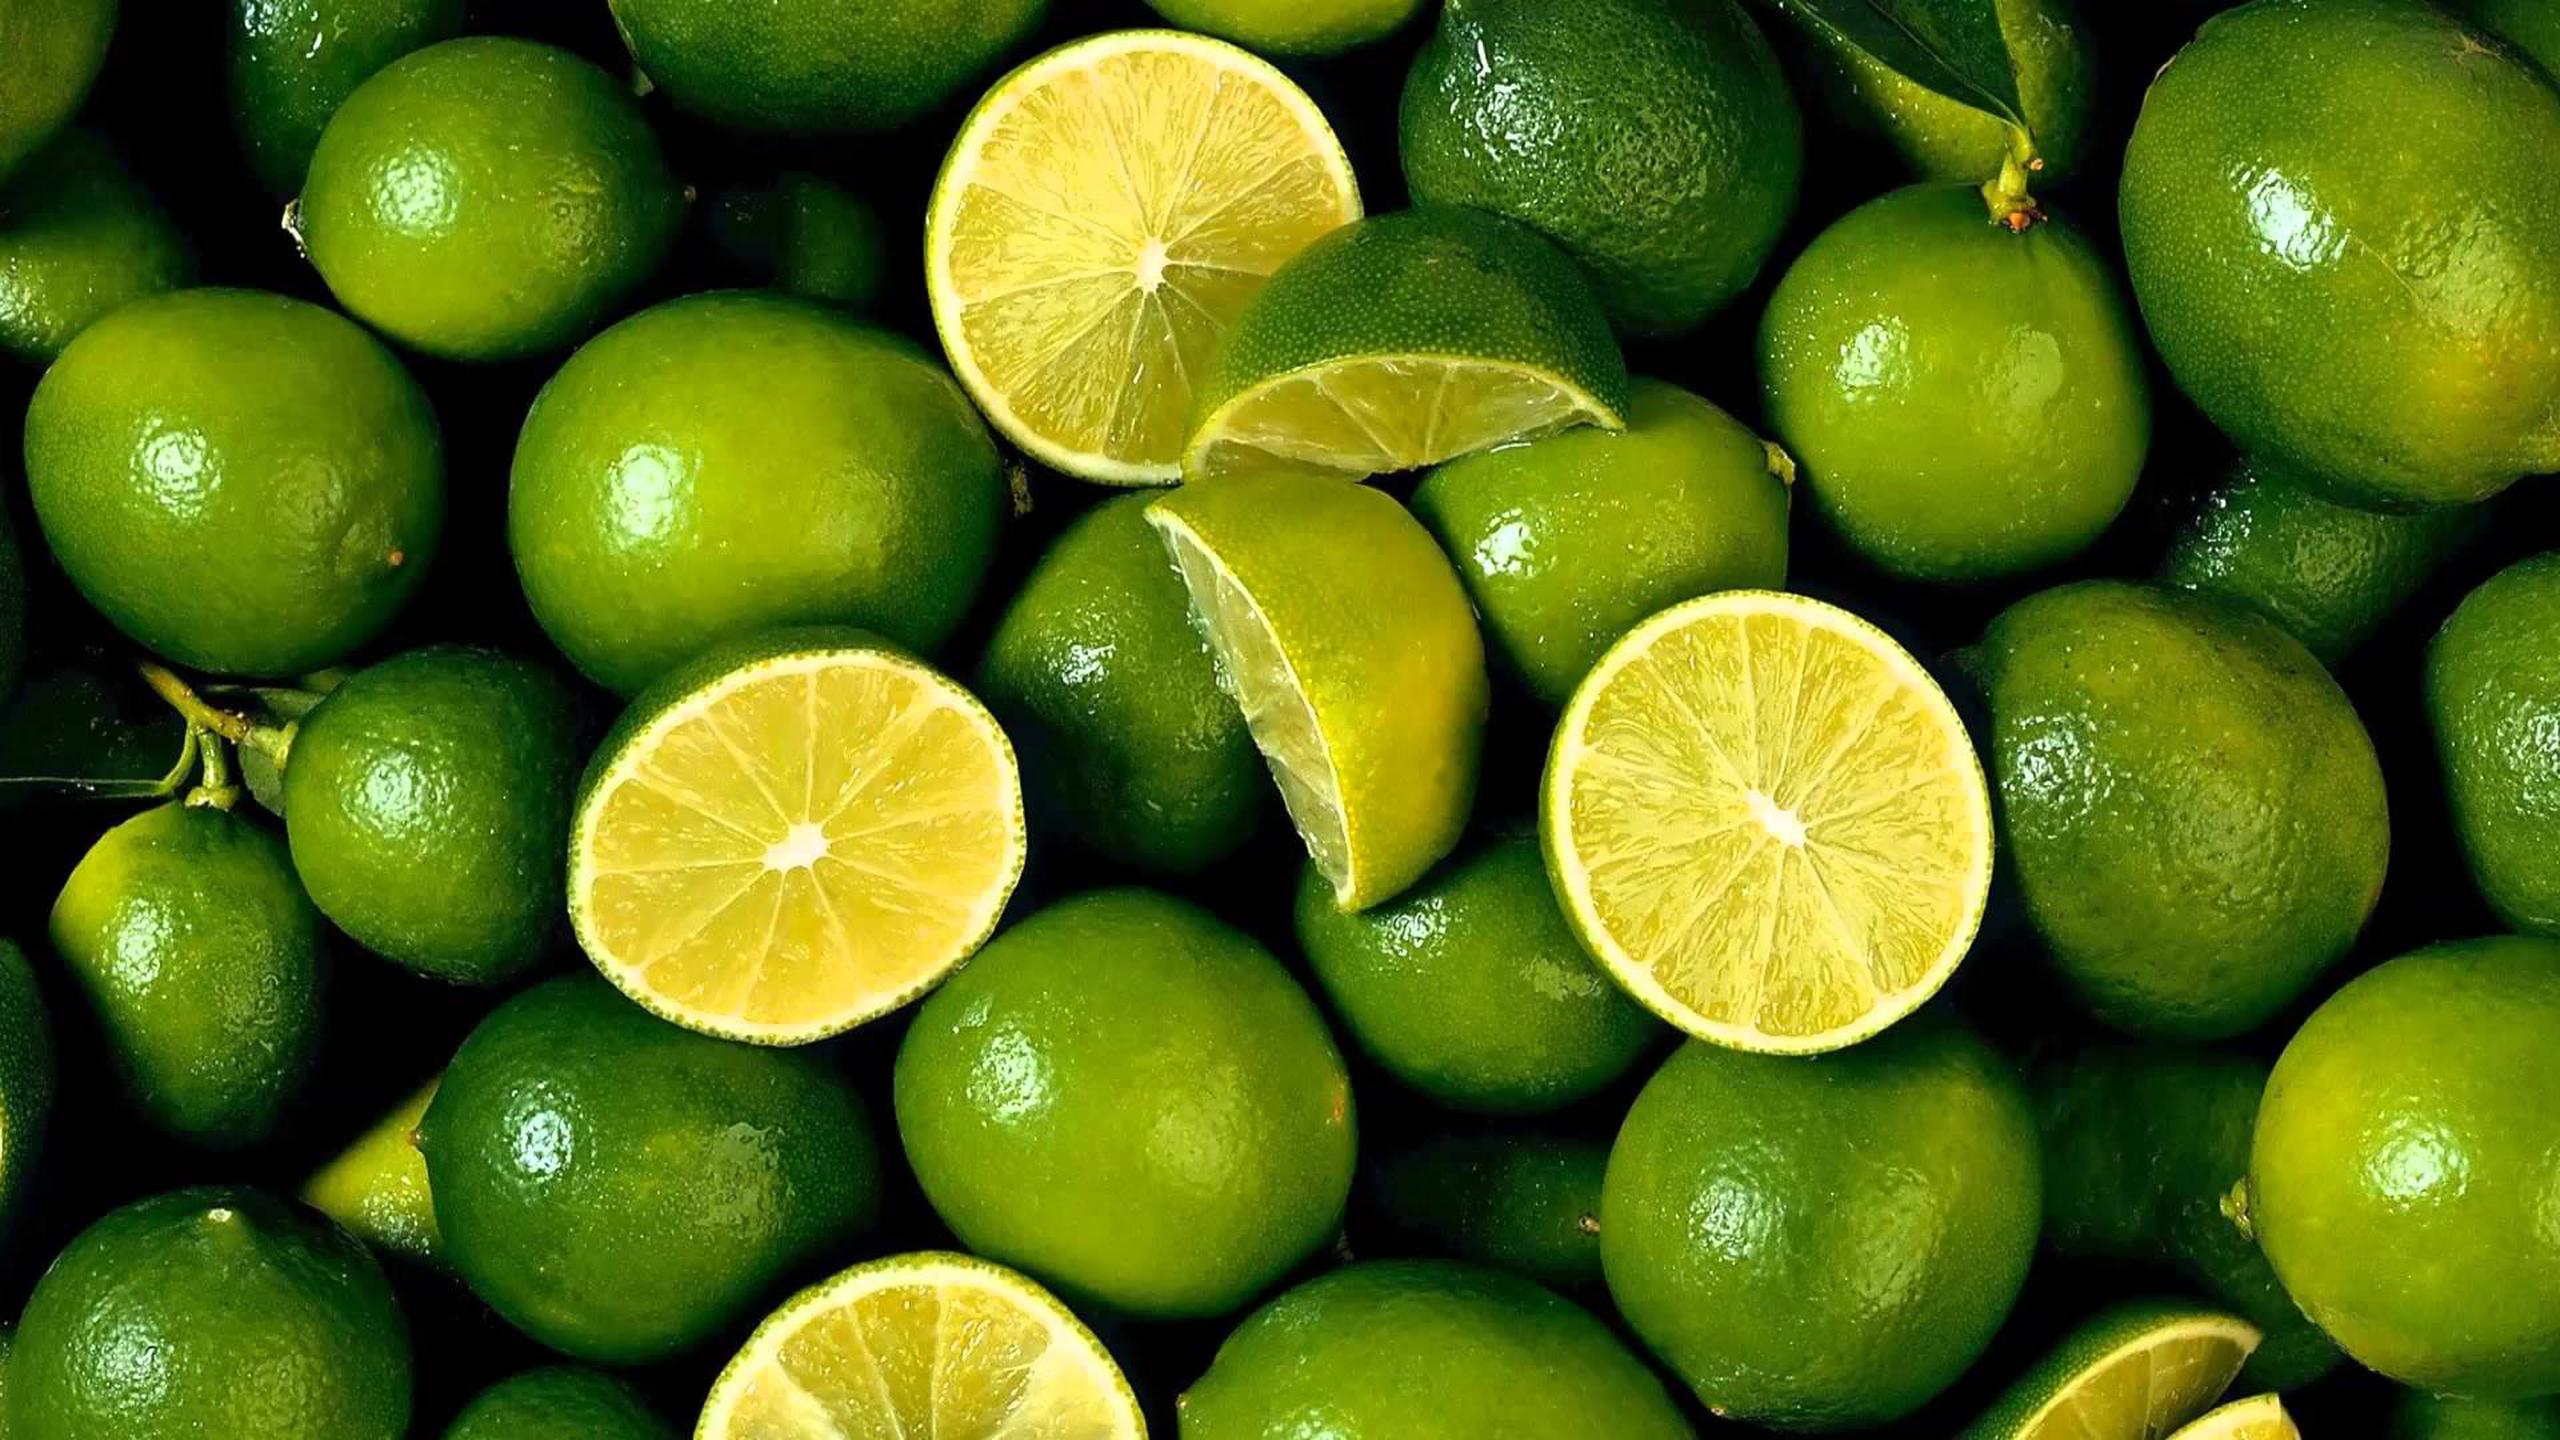 El limón fue el producto alimenticio en Perú que más subió de precio en agosto, 69%, según el boletín del Instituto Nacional de Estadística e Informática, que mide el alza de los precios en el país.